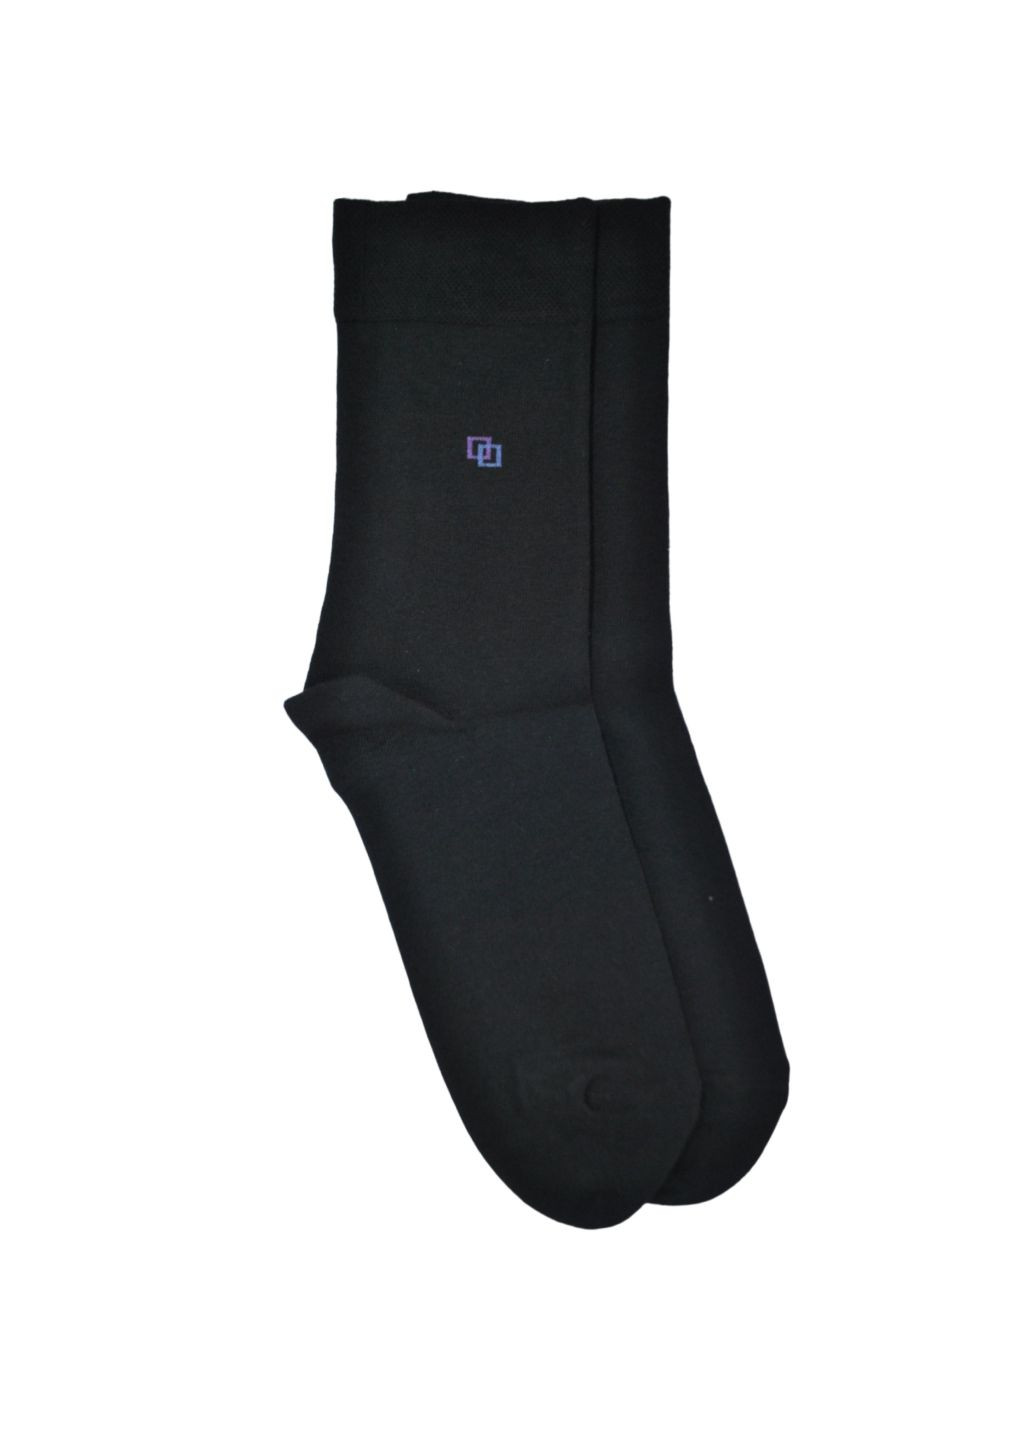 NTF Шкарпетки чол. (середньої довжини) MS3 Basic 001, р.39-42, black. Набір (3 шт.) MZ ms3 basic 001_набори (260063193)